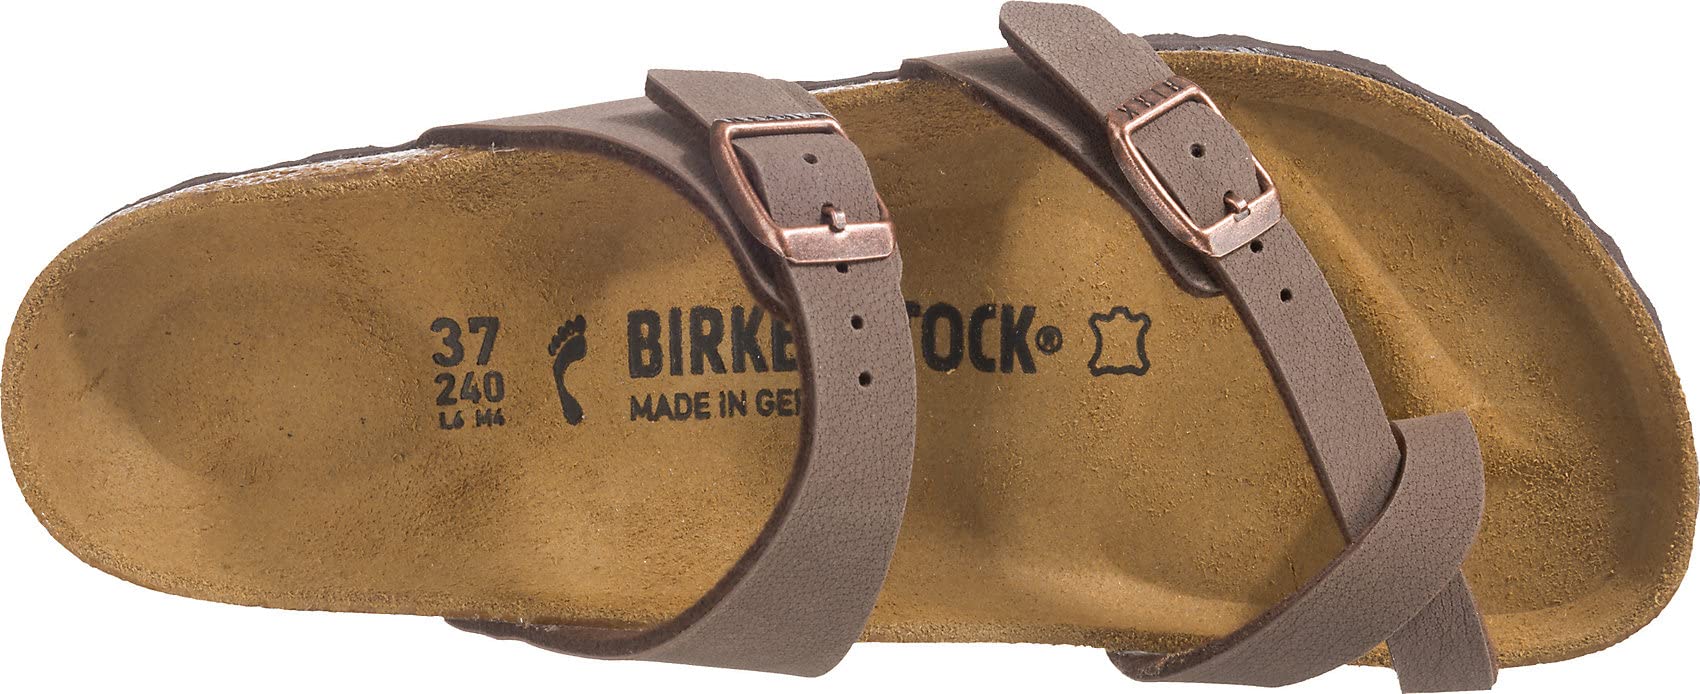 Birkenstock Women's Arizona EVA Sandals